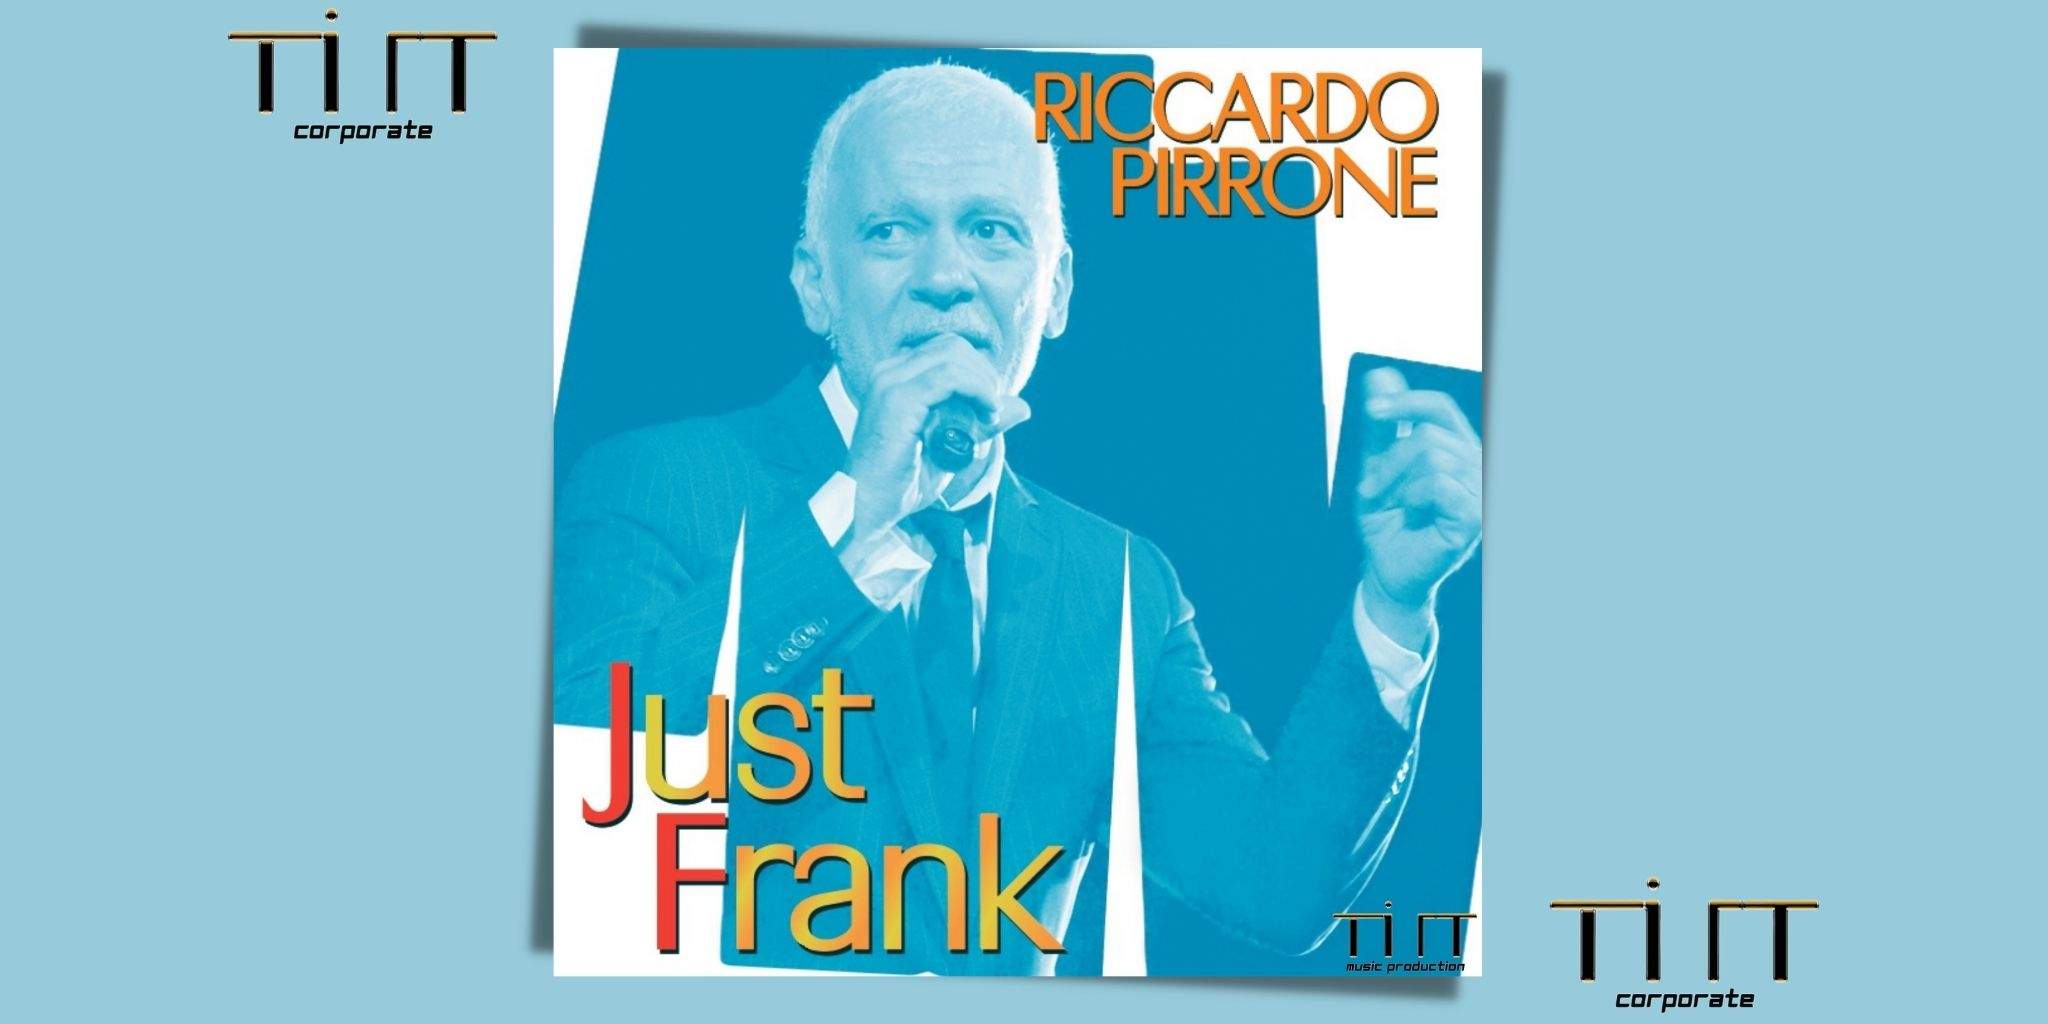 Riccardo Pirrone pubblica la raccolta di brani dal titolo Just Frank!